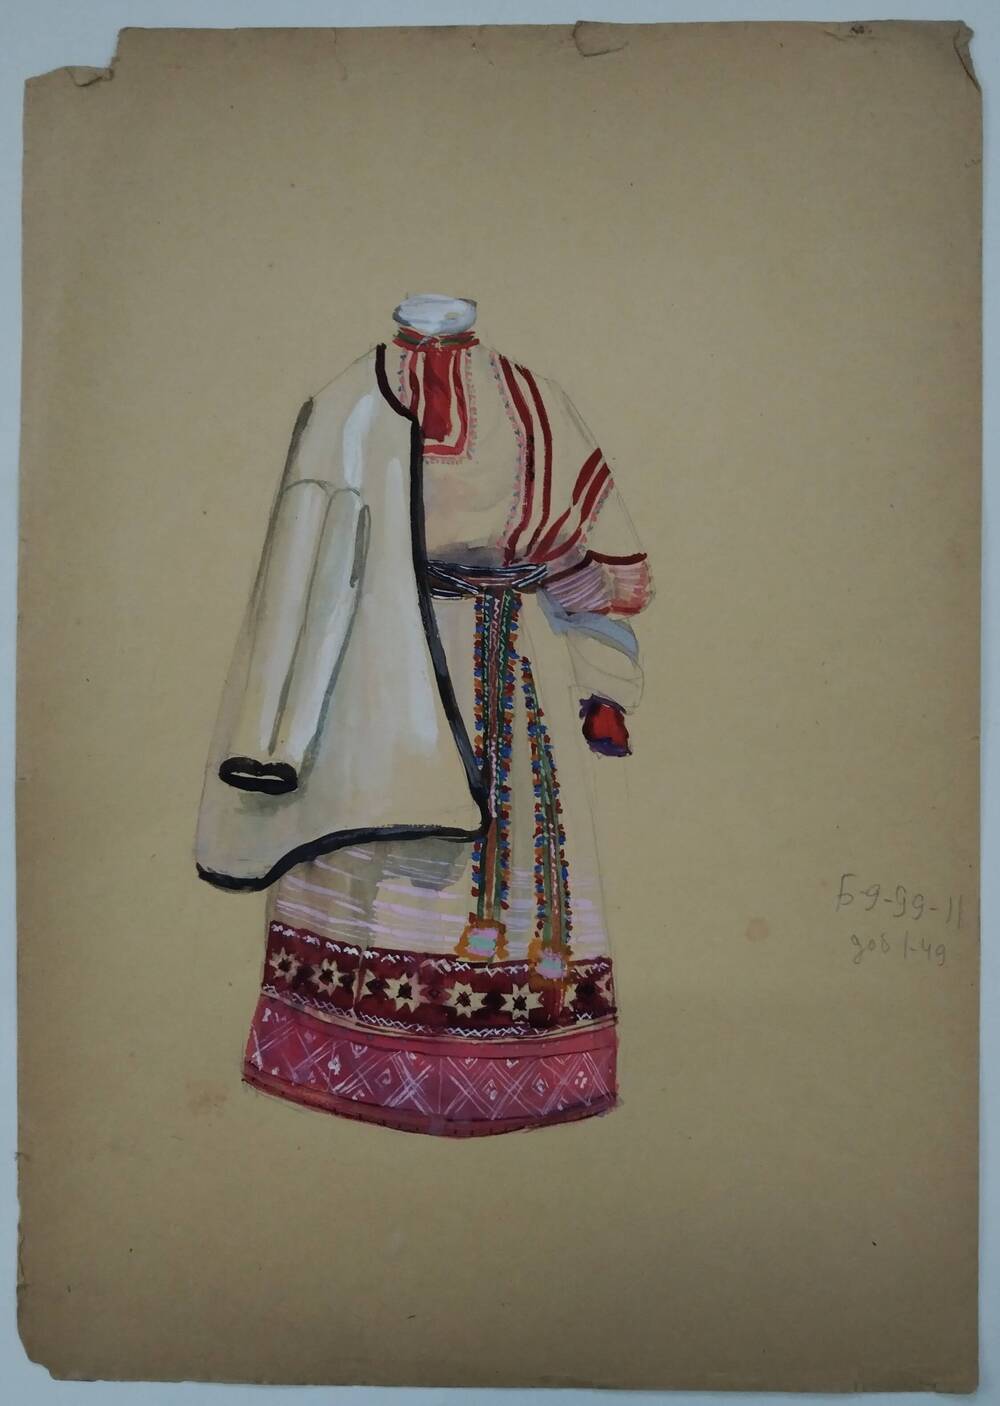 Чернышова Г.А. Зарисовка народного женского костюма (север) с верхней одеждой (летняя курта).